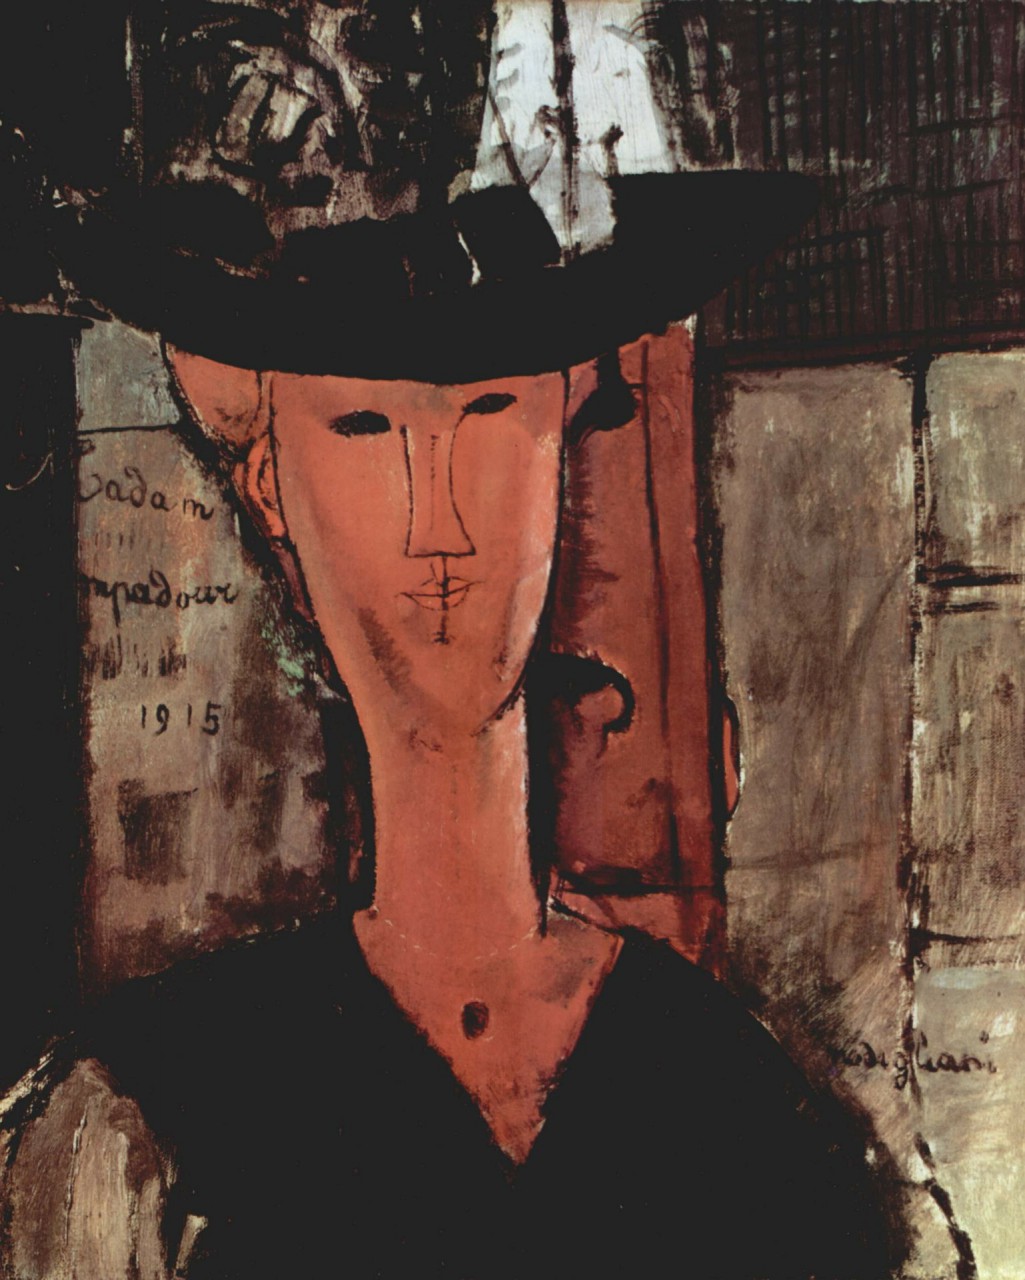 Opere dubbie alla mostra di Modigliani a Genova?